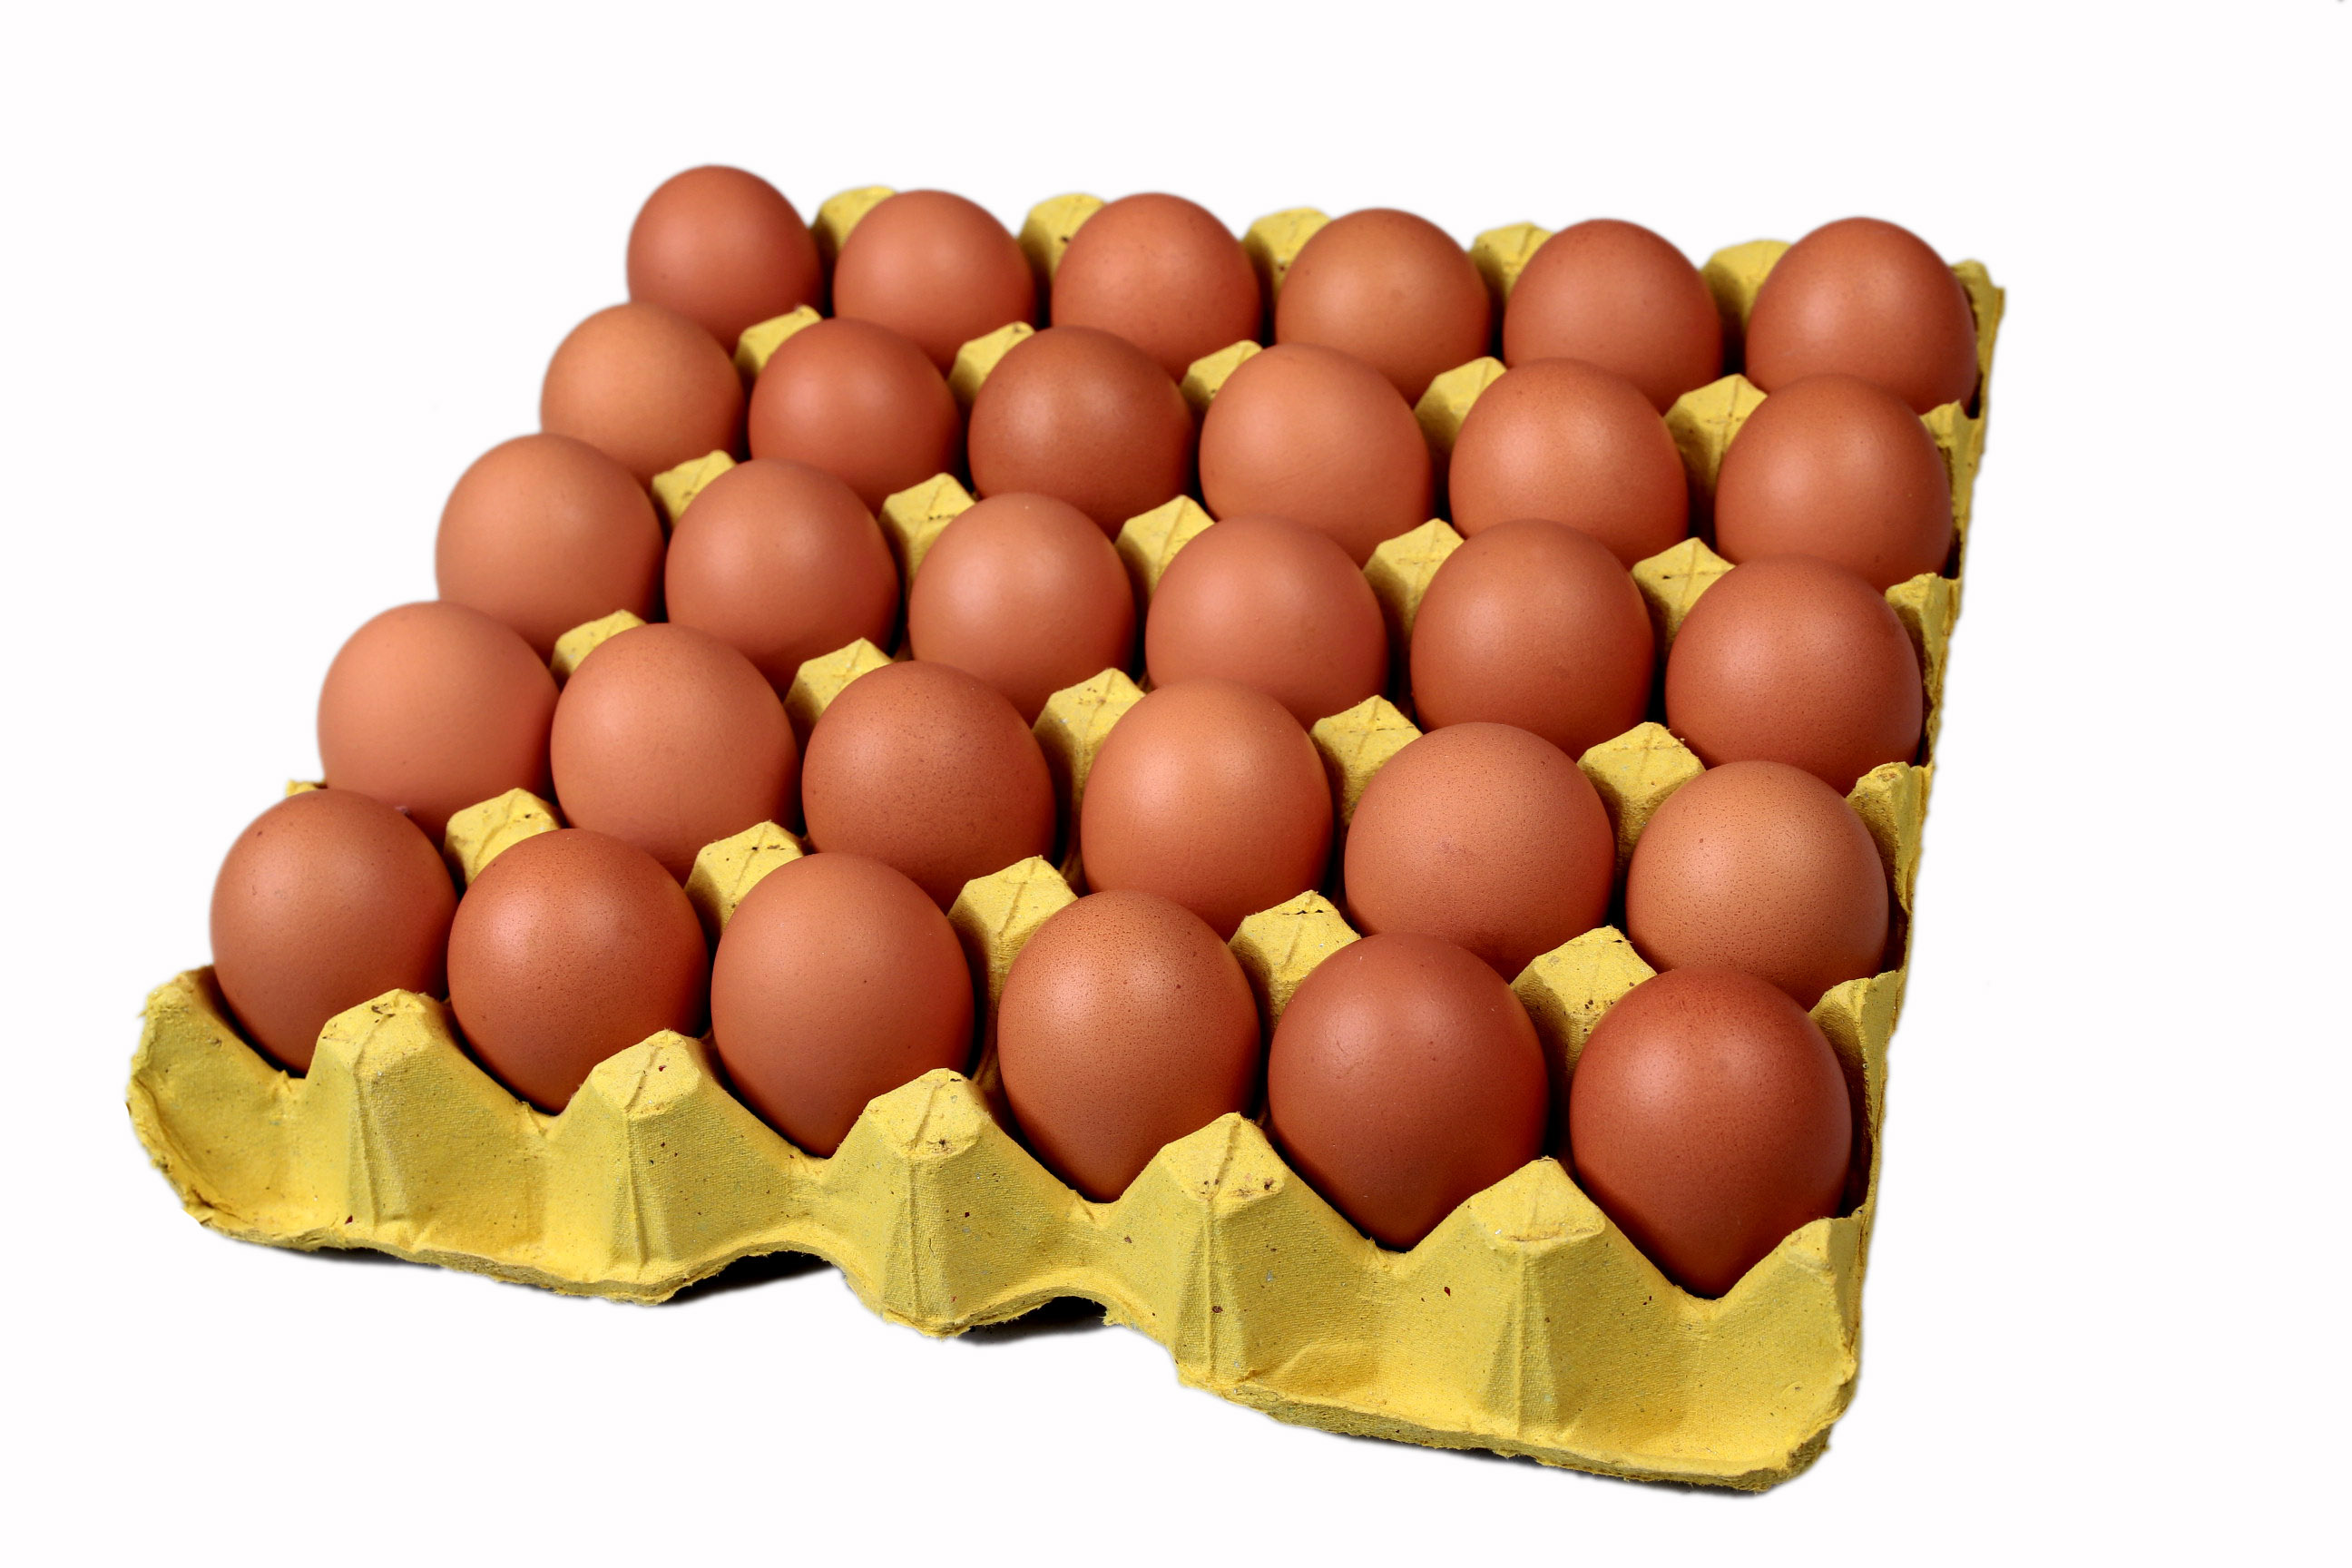 30个/盘普通红皮鸡蛋 新鲜鸡蛋实惠 深圳满百包邮 坏蛋包赔超低价